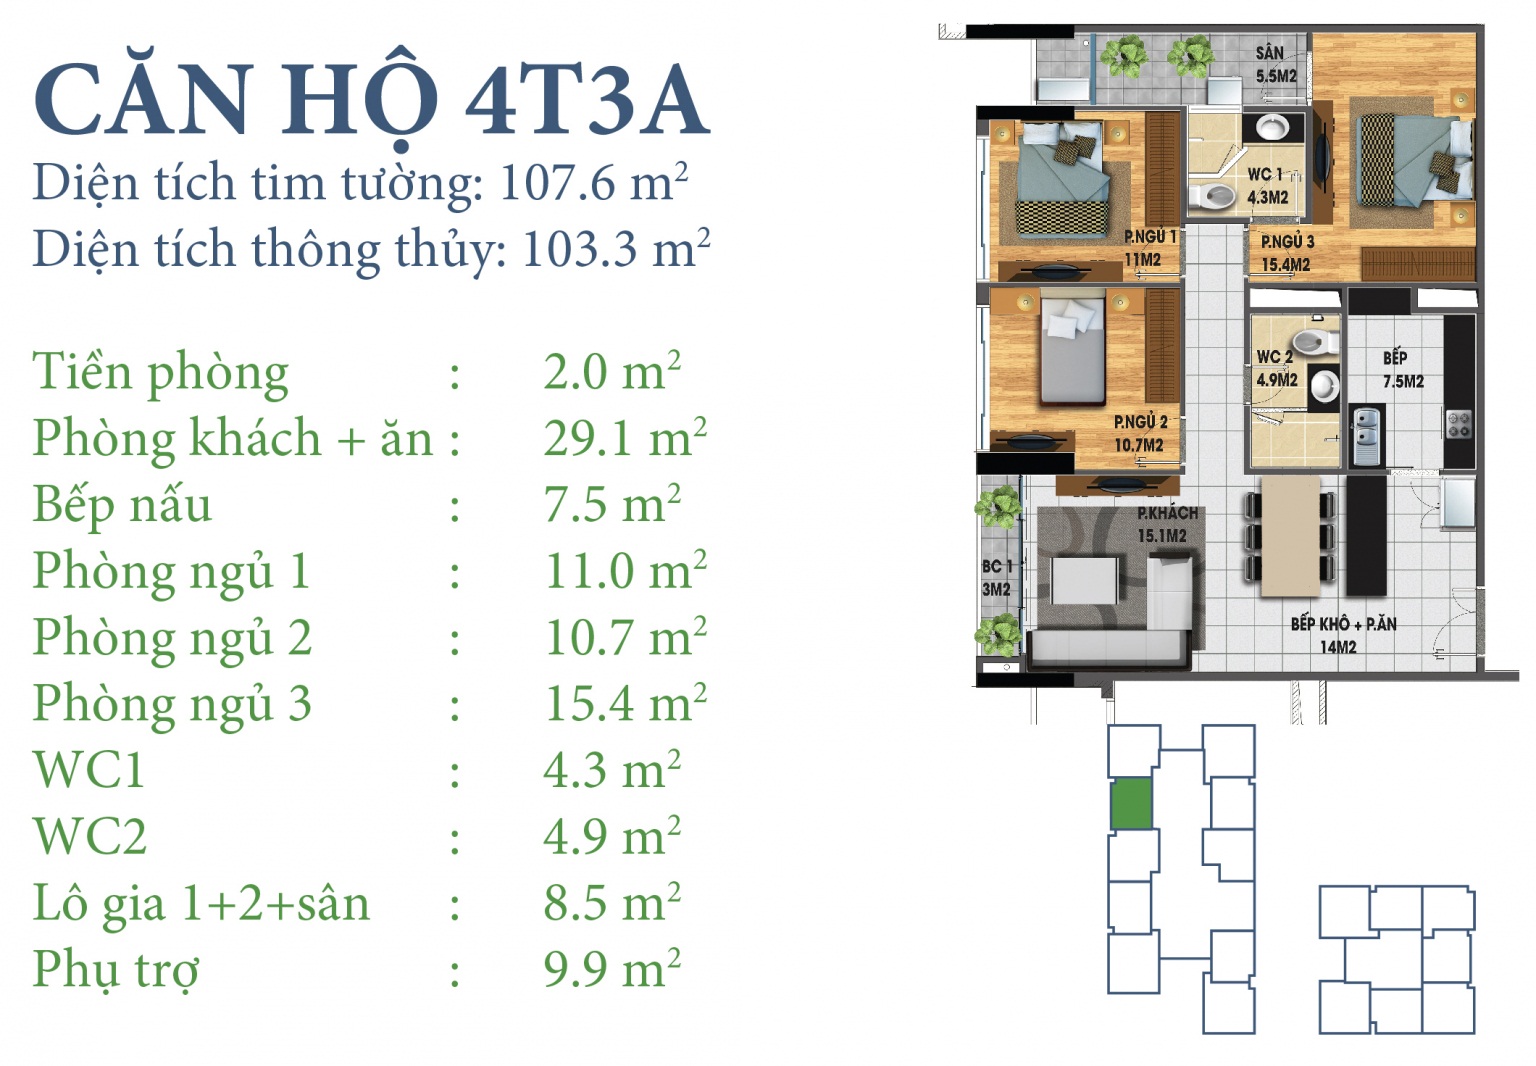 Mặt bằng căn hộ 4T3A chung cư N03T3-T4 Ngoại Giao Đoàn